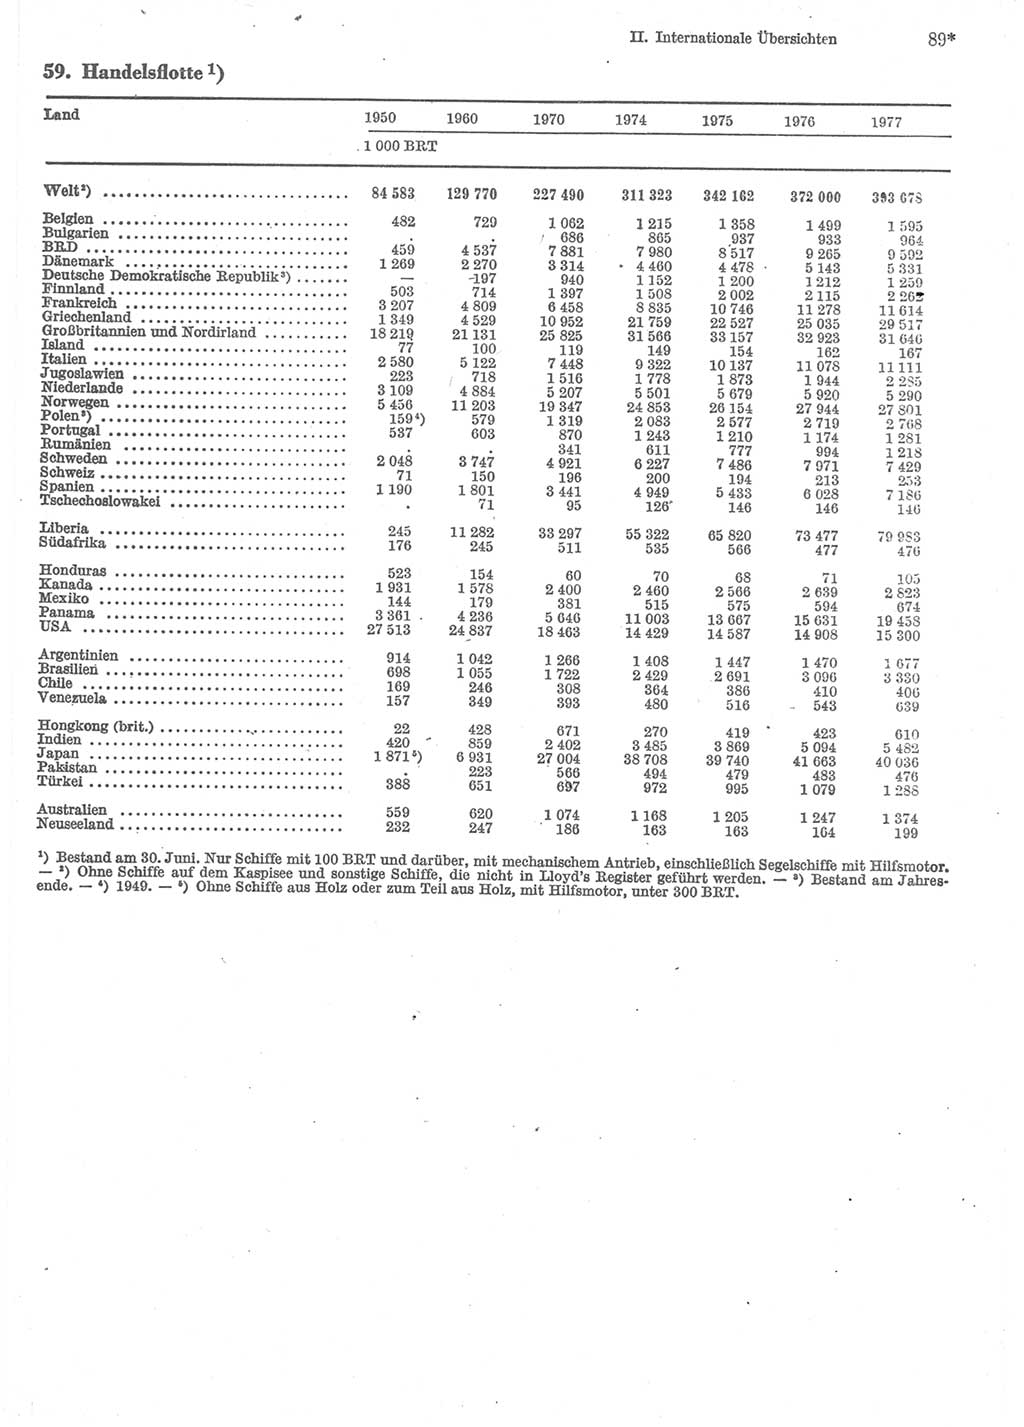 Statistisches Jahrbuch der Deutschen Demokratischen Republik (DDR) 1979, Seite 89 (Stat. Jb. DDR 1979, S. 89)